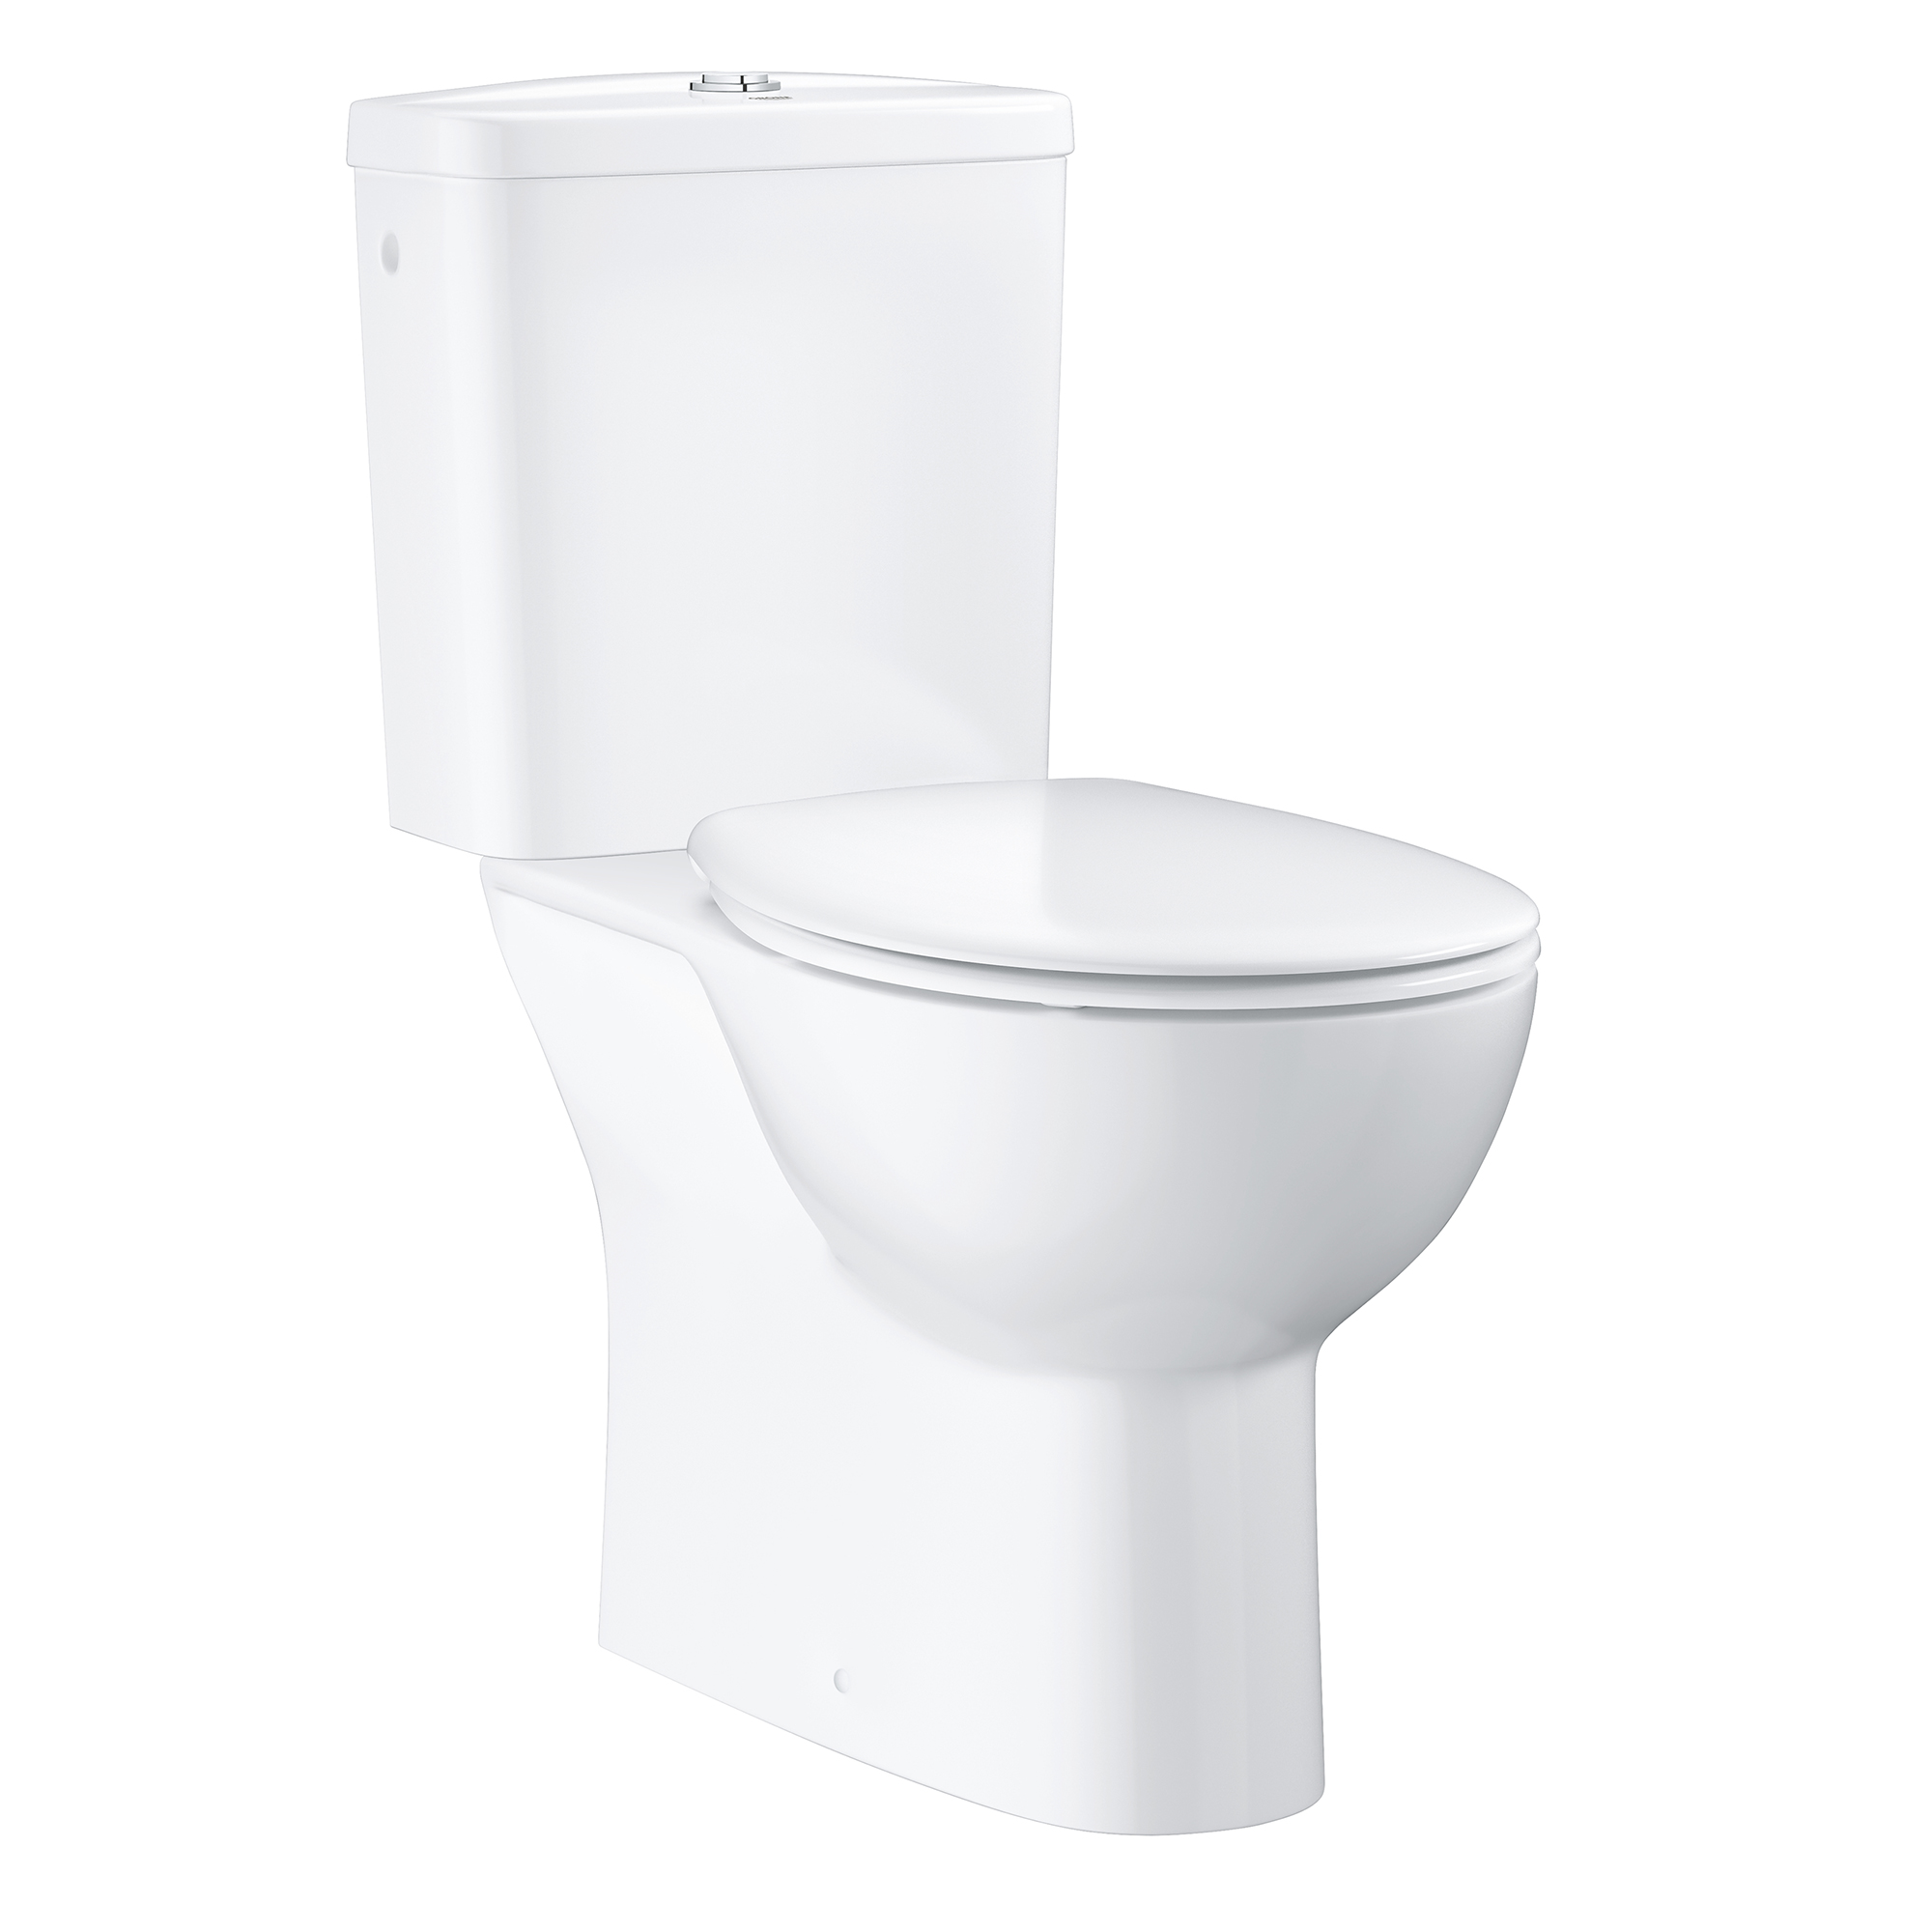 WC Toilette Stand Tiefspüler Bodenstehend Spülkasten Keramik Sitz SoftClose PR 